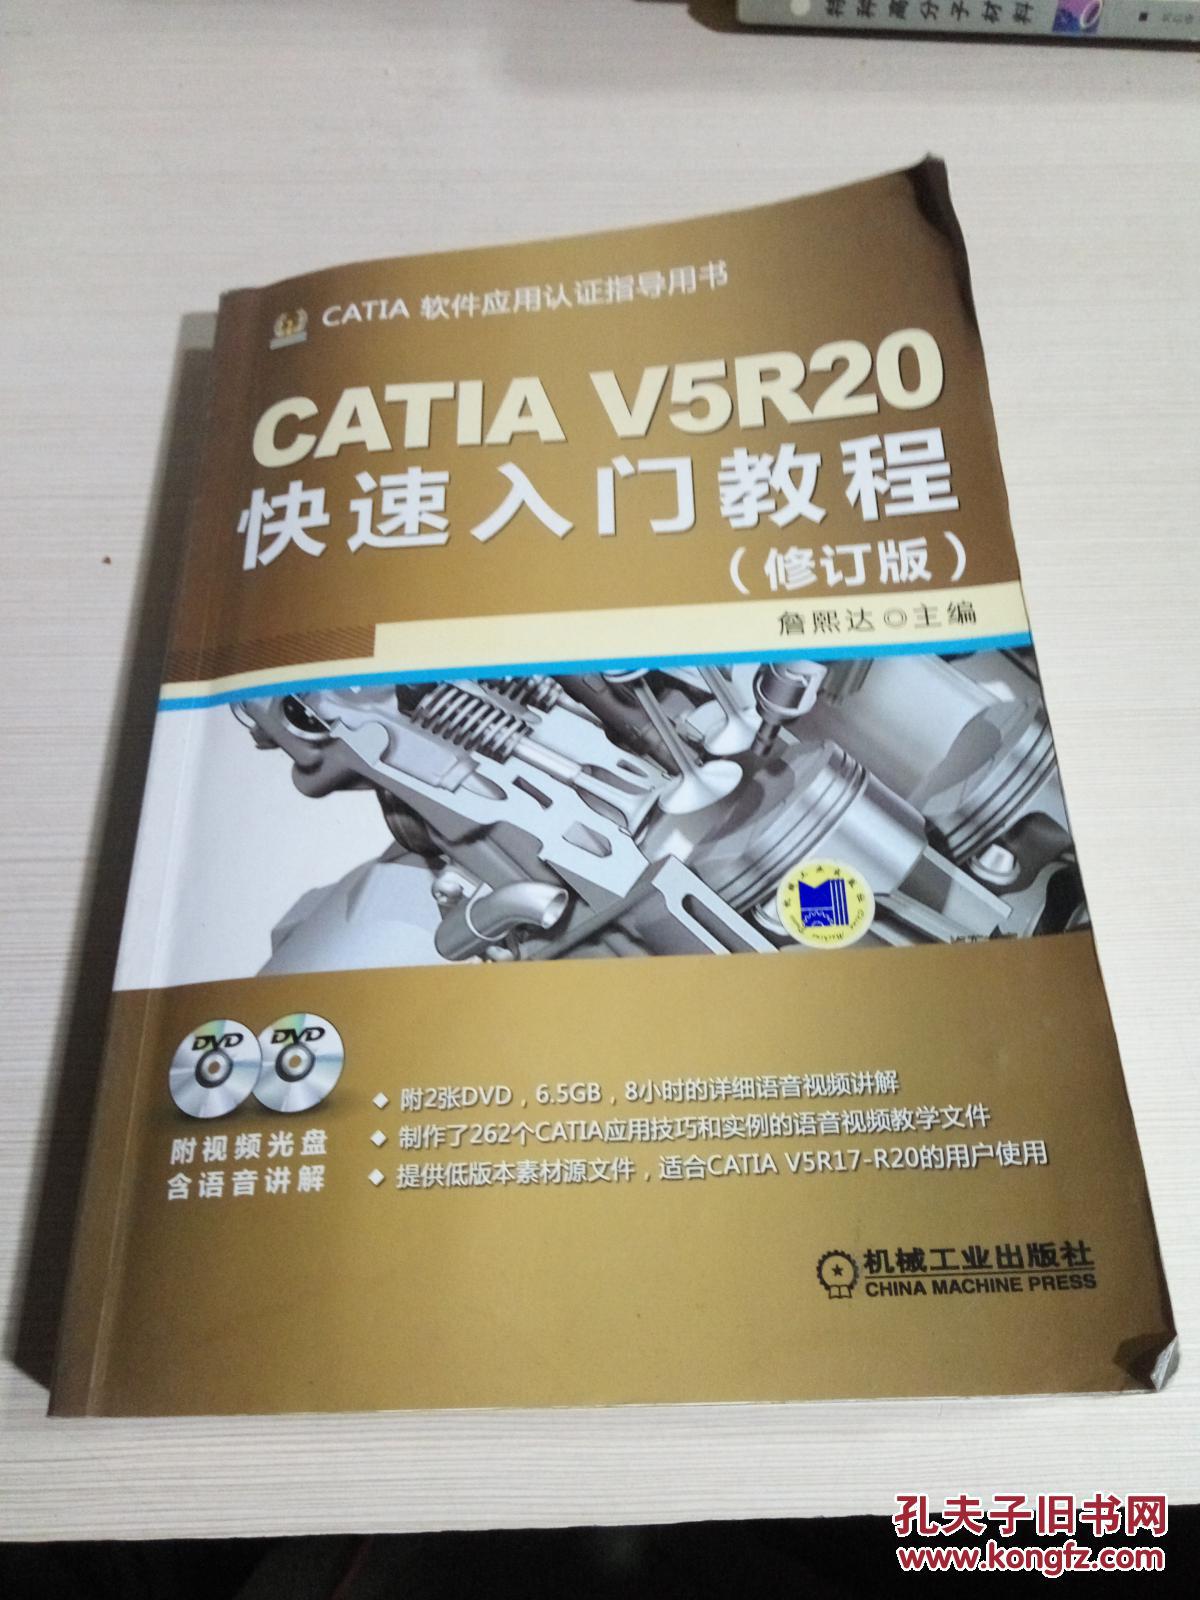 【图】CATIA V5R20快速入门教程(修订版)(有